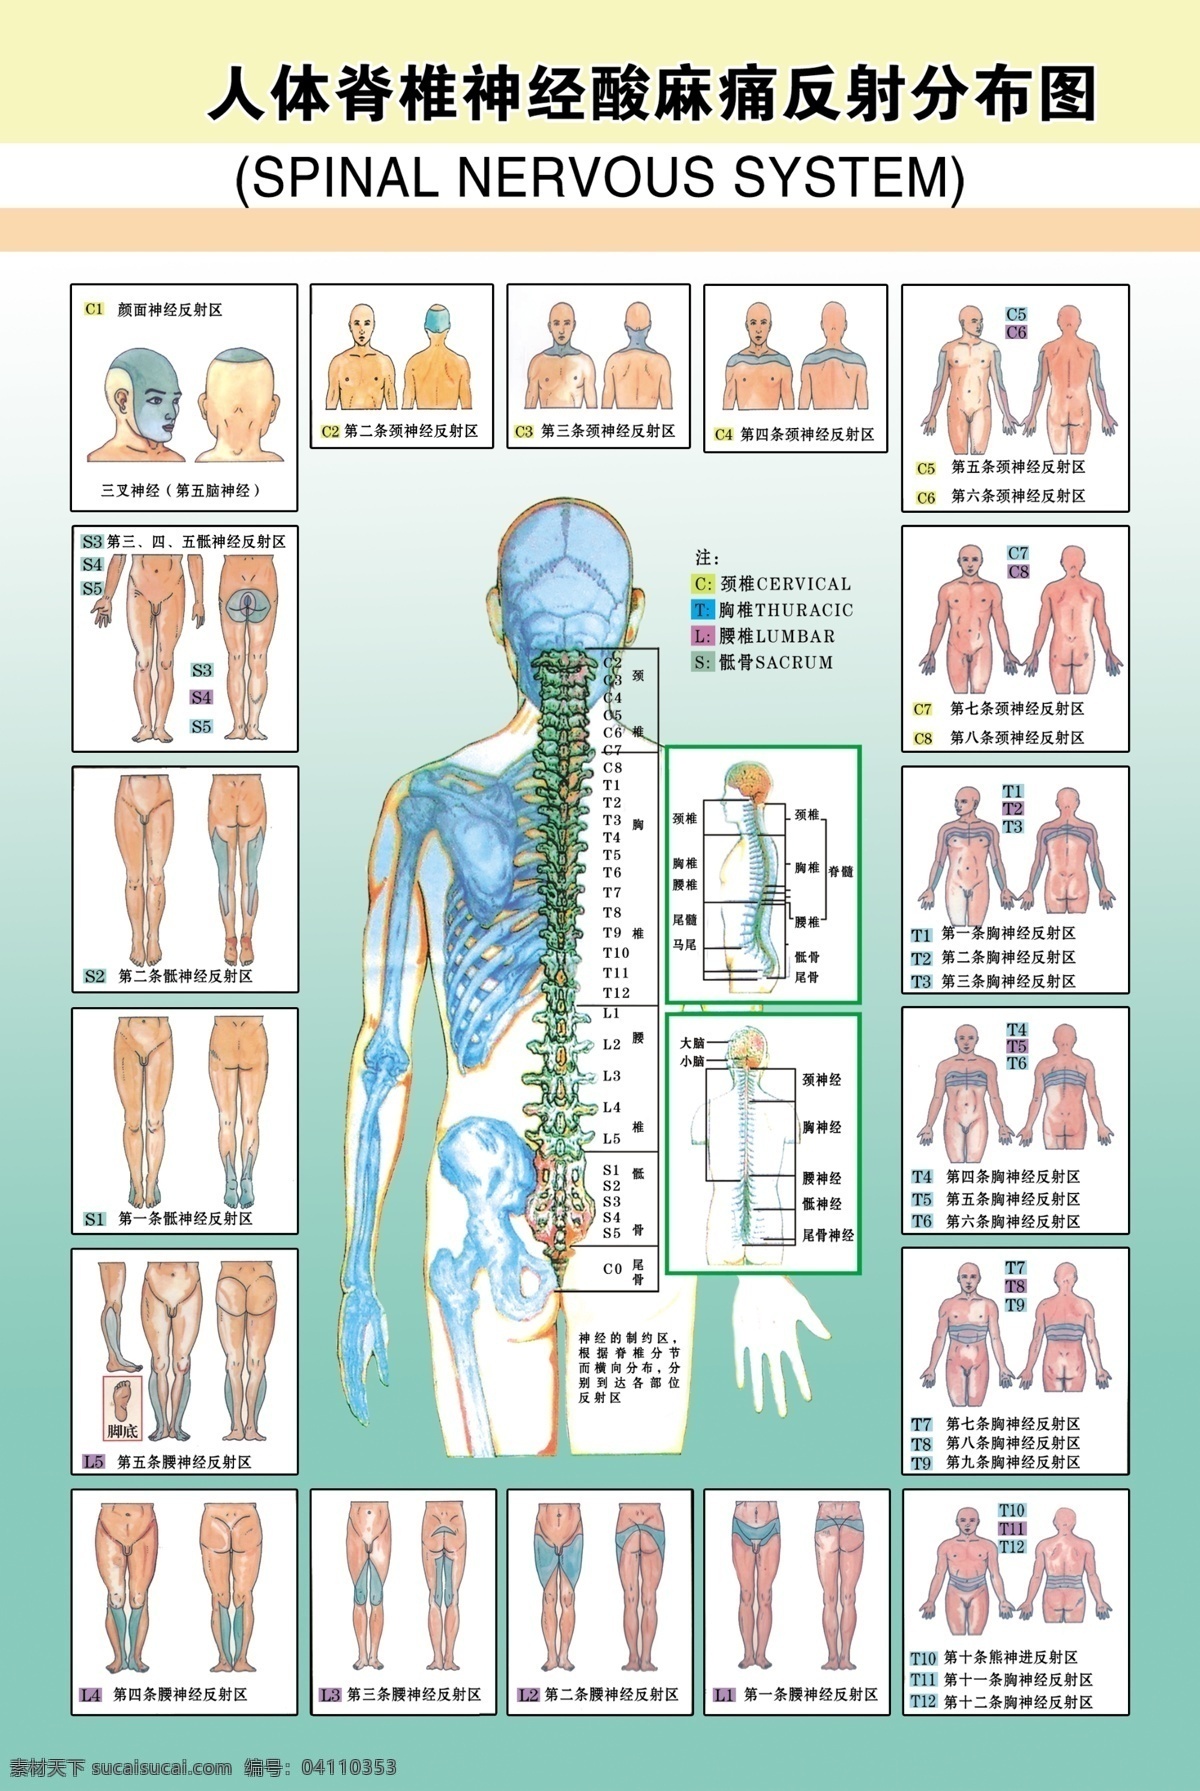 人体 脊椎 神经 酸麻 痛 反射 分布图 分层 医学 写真 像纸